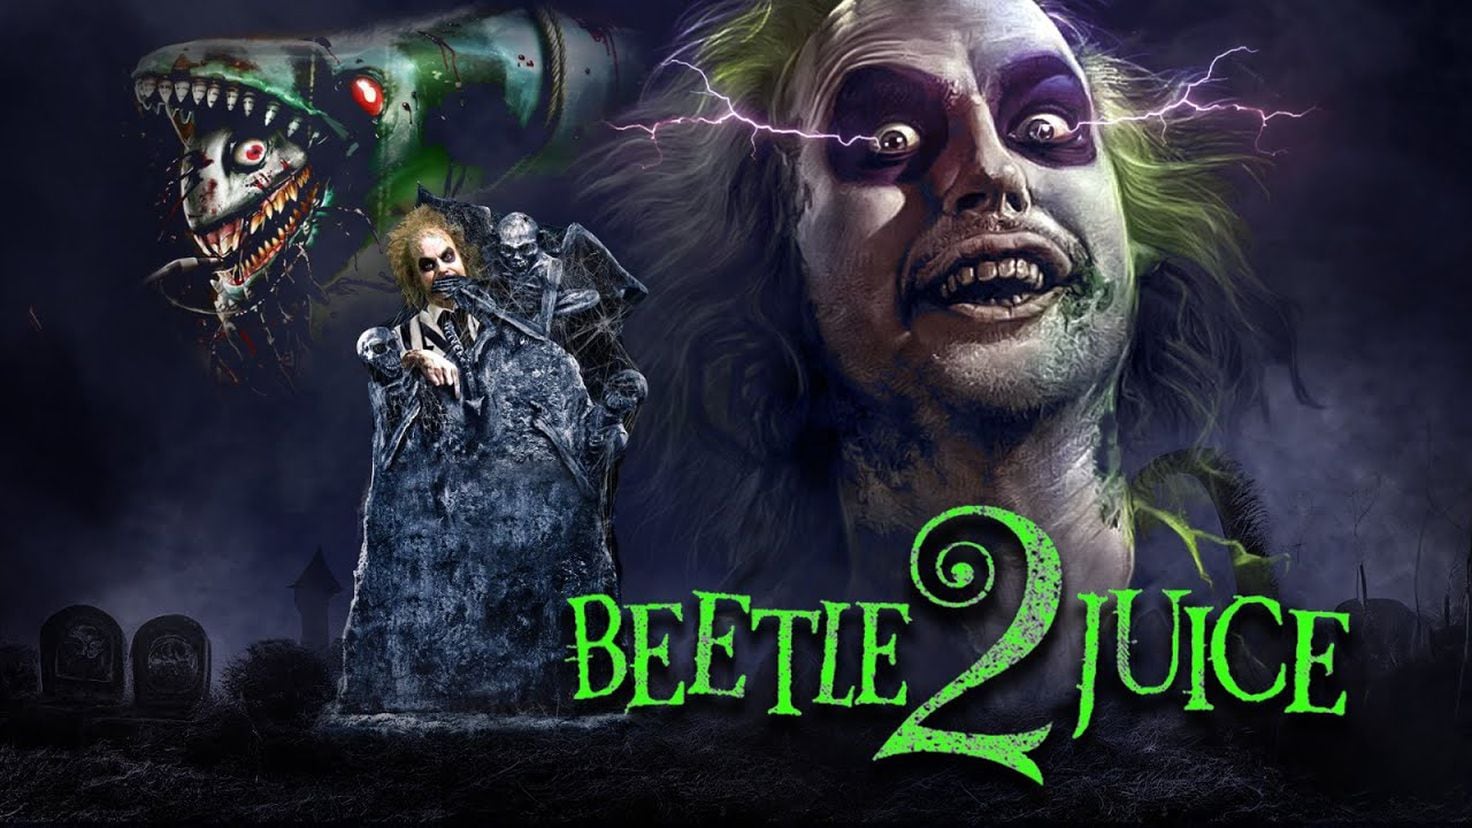 Beetlejuice 2 ya tiene fecha de estreno y se revela primer póster oficial – Diario La Página